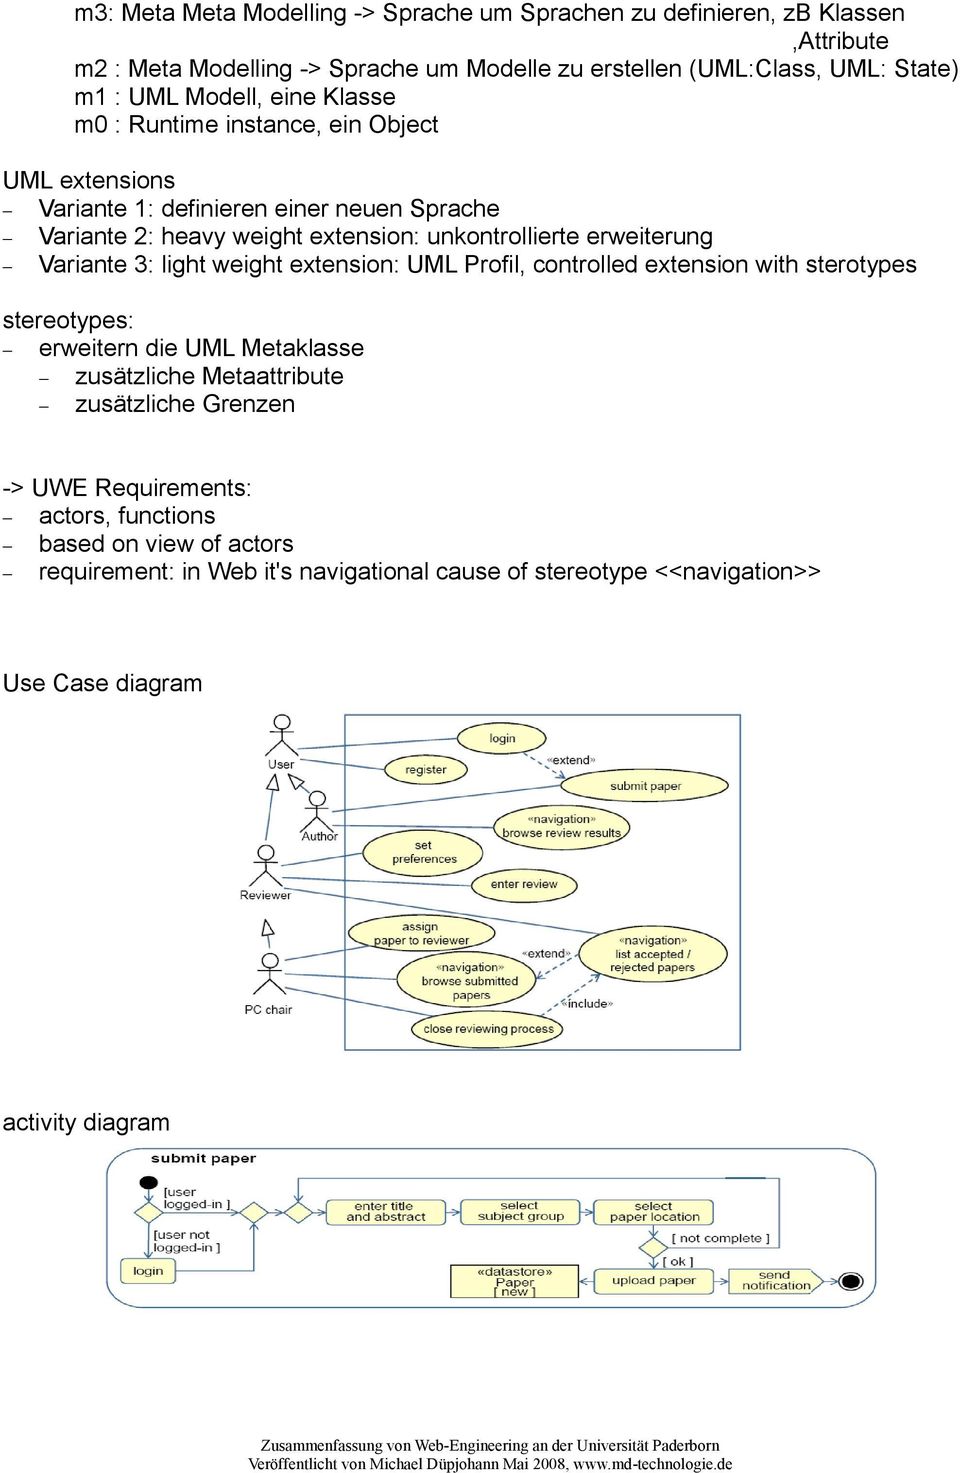 erweiterung Variante 3: light weight extension: UML Profil, controlled extension with sterotypes stereotypes: erweitern die UML Metaklasse zusätzliche Metaattribute